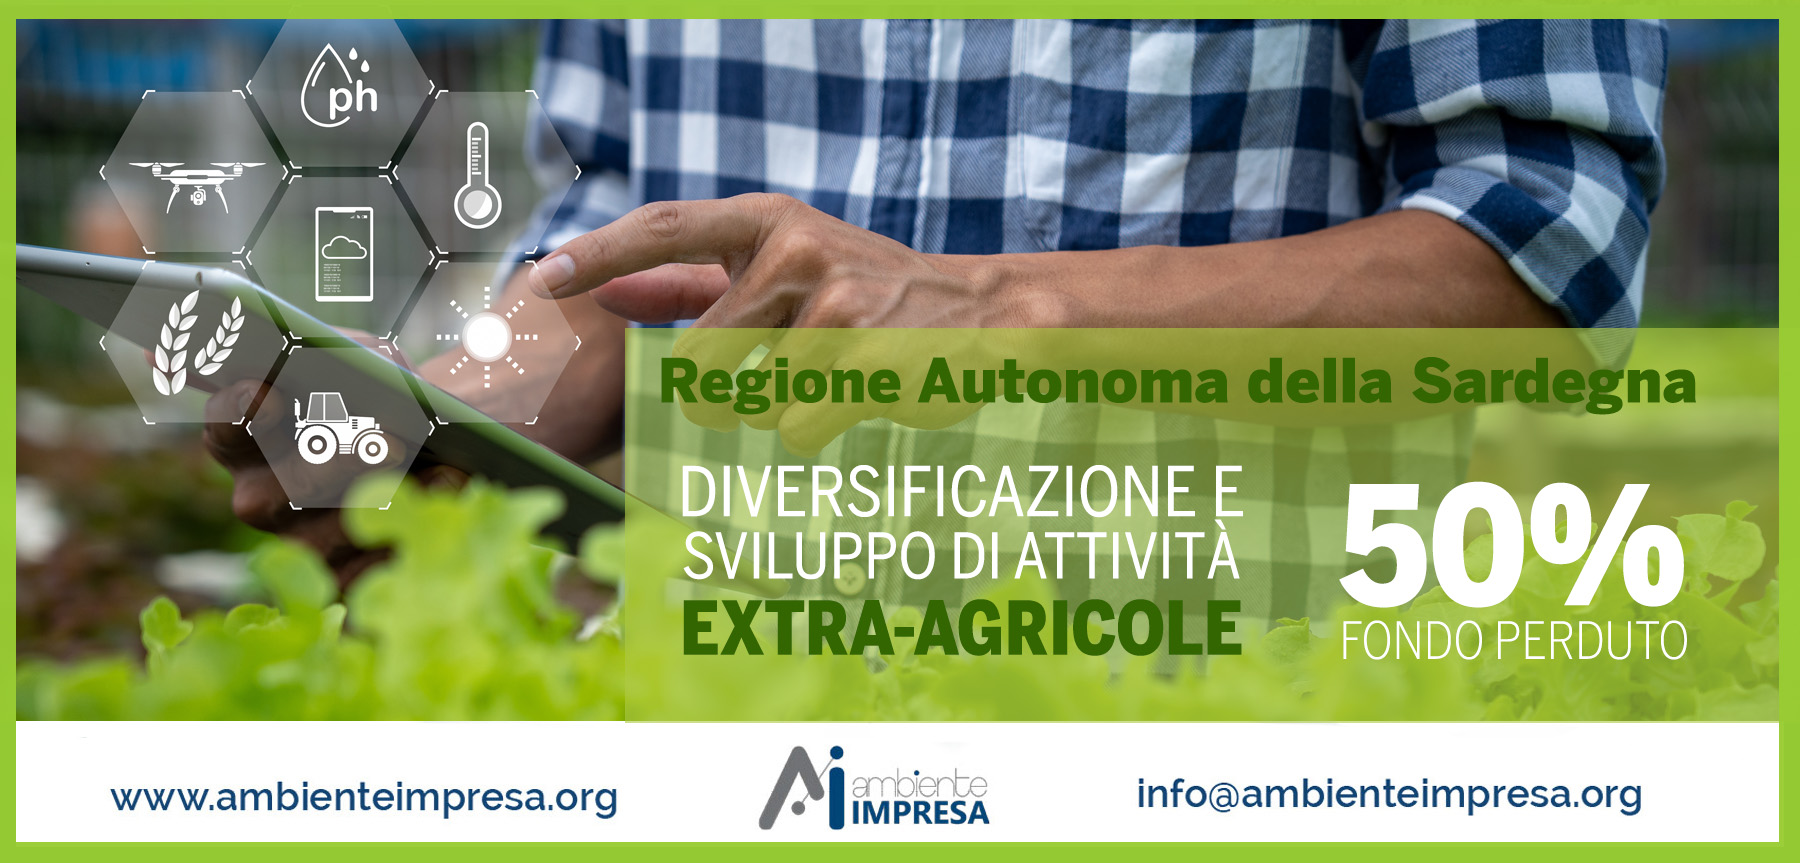 Sostegno a investimenti nelle aziende agricole per la diversificazione e sviluppo di attività extra-agricole - Ambiente Imopresa - Cagliari